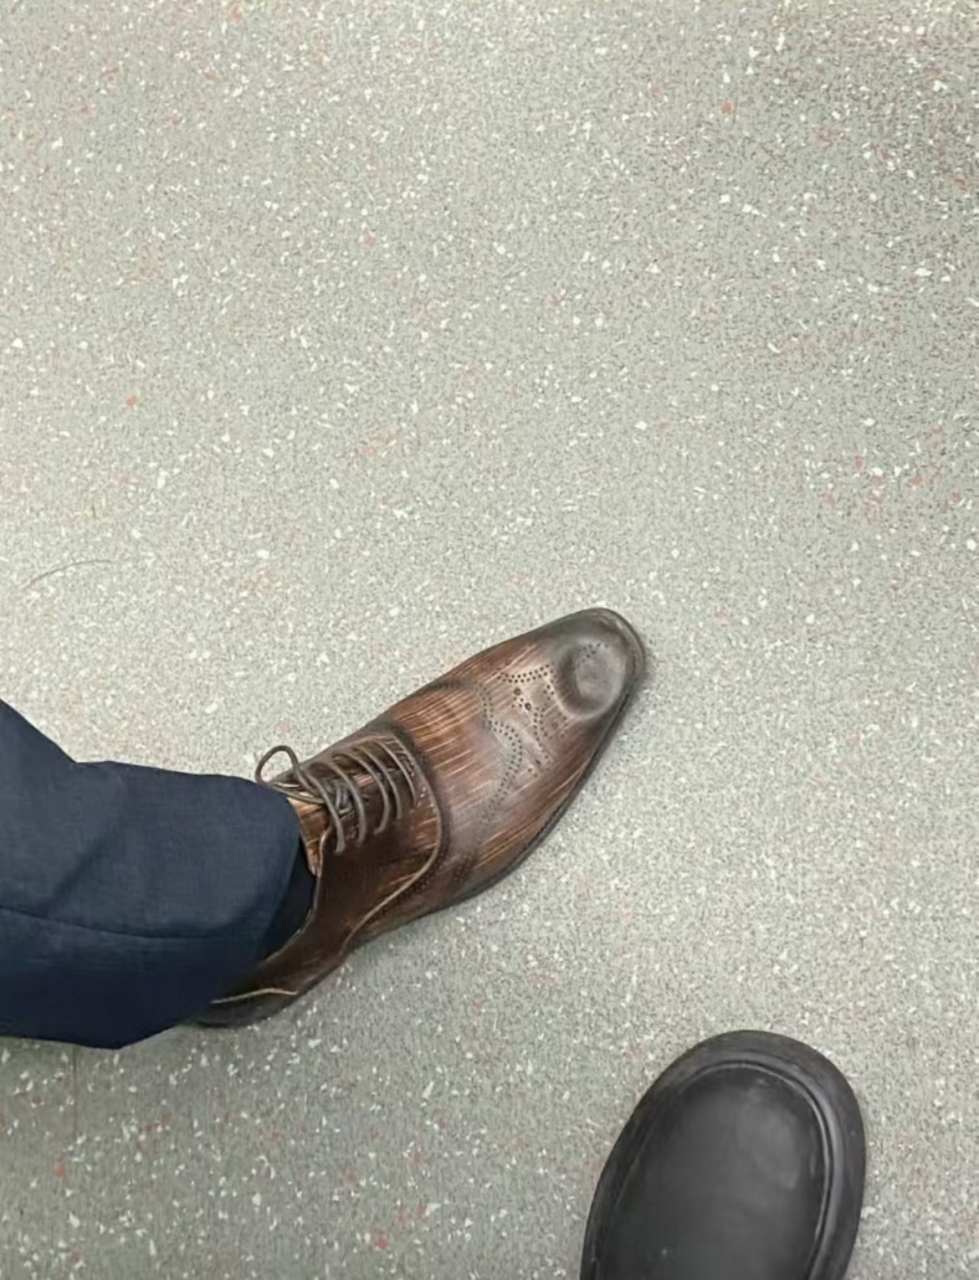 地铁上别人的皮鞋被我踩窝进去了,怎么办?